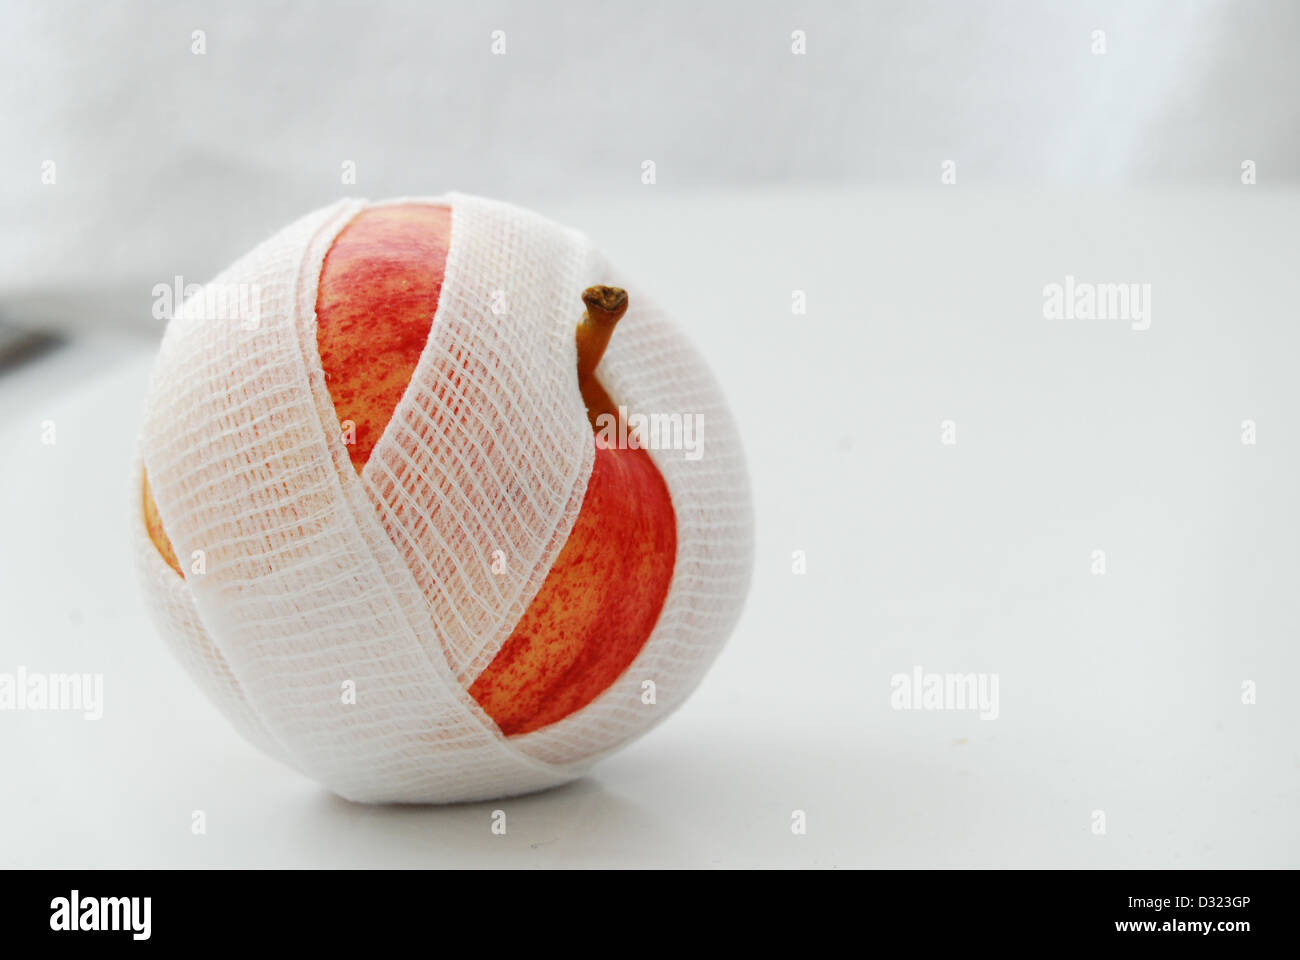 Un rosso e giallo Apple su uno sfondo bianco, avvolto in una garza bianca benda con un sopra o birds eye view del frutto. Foto Stock